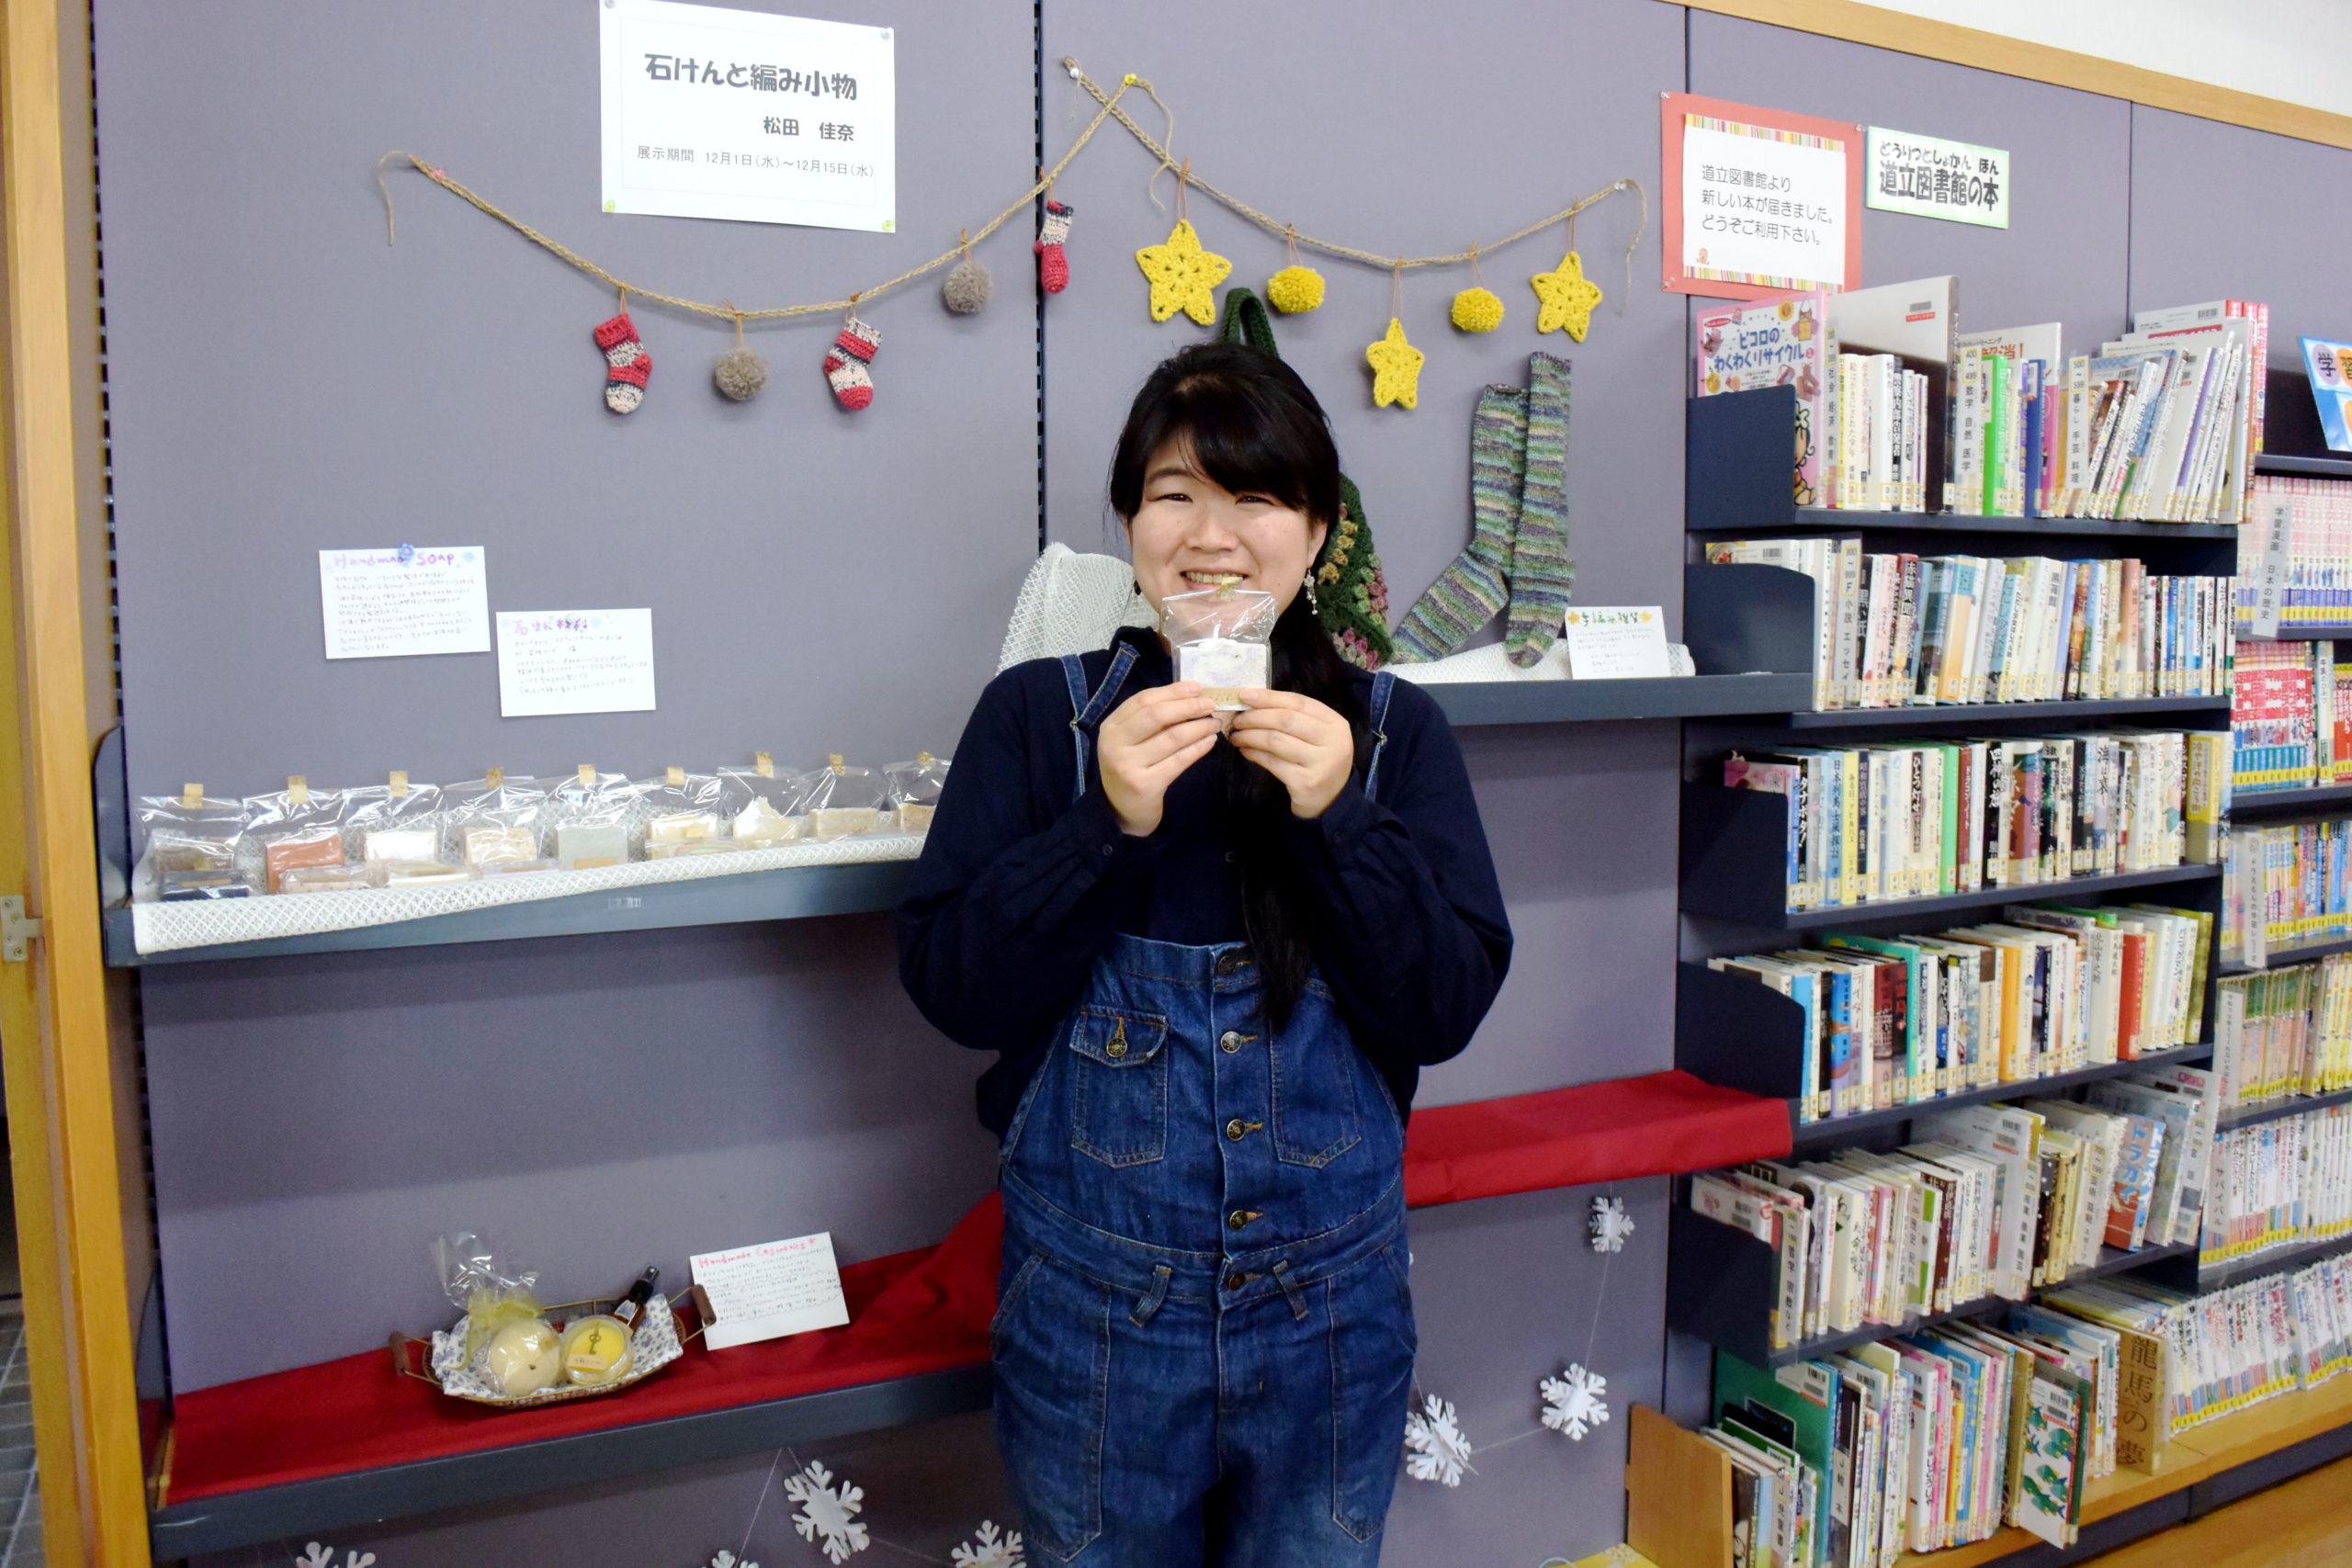 趣味の作品展示「石けんと編み小物」松田佳奈さん